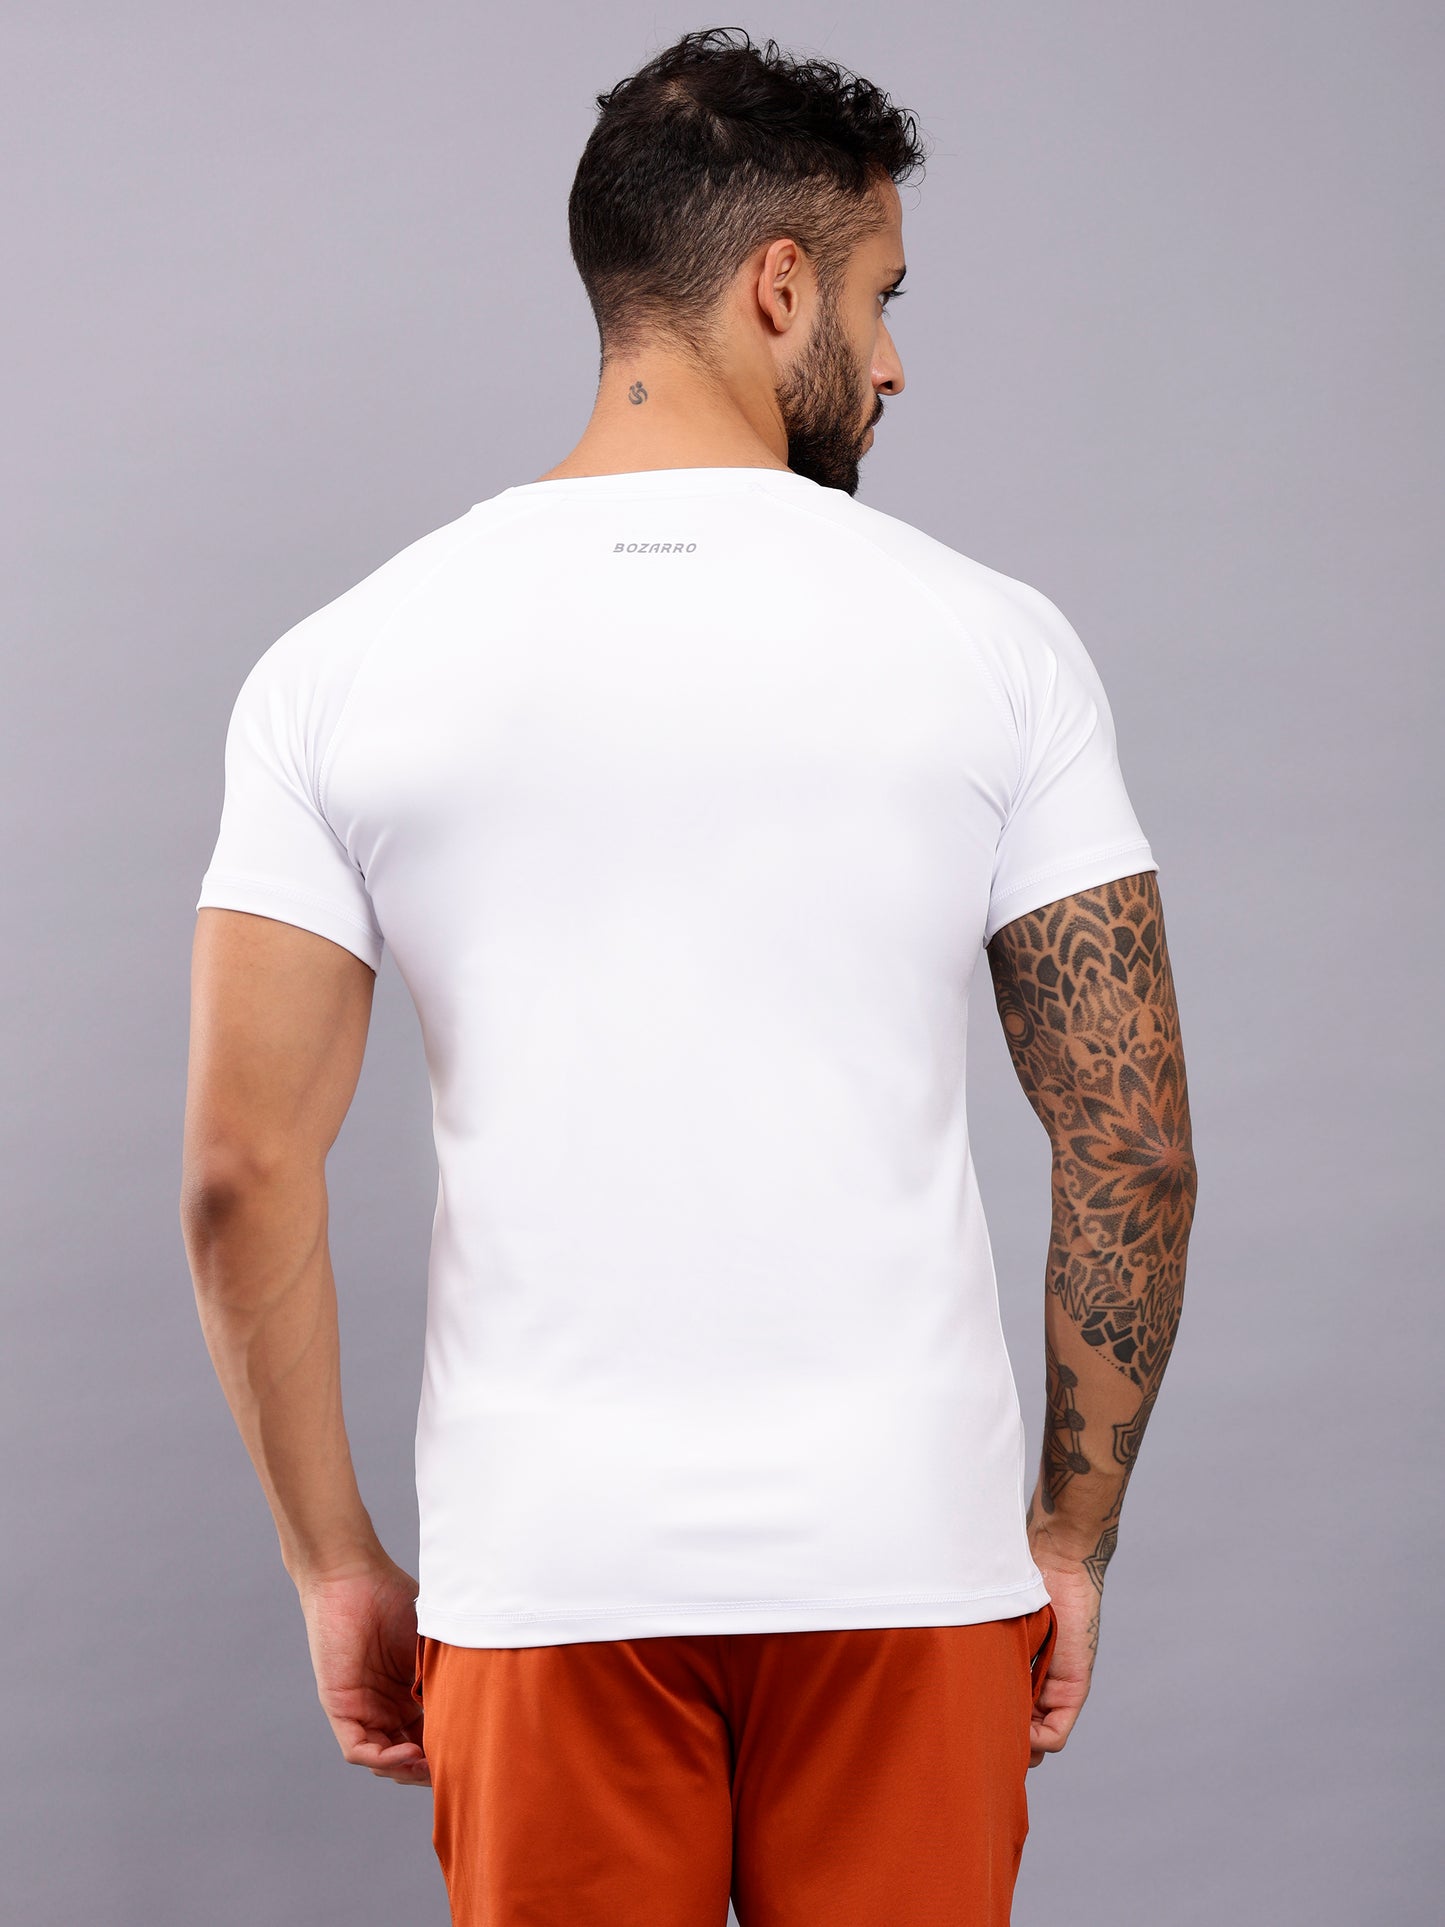 Round neck half sleeve activewear tshirt-white